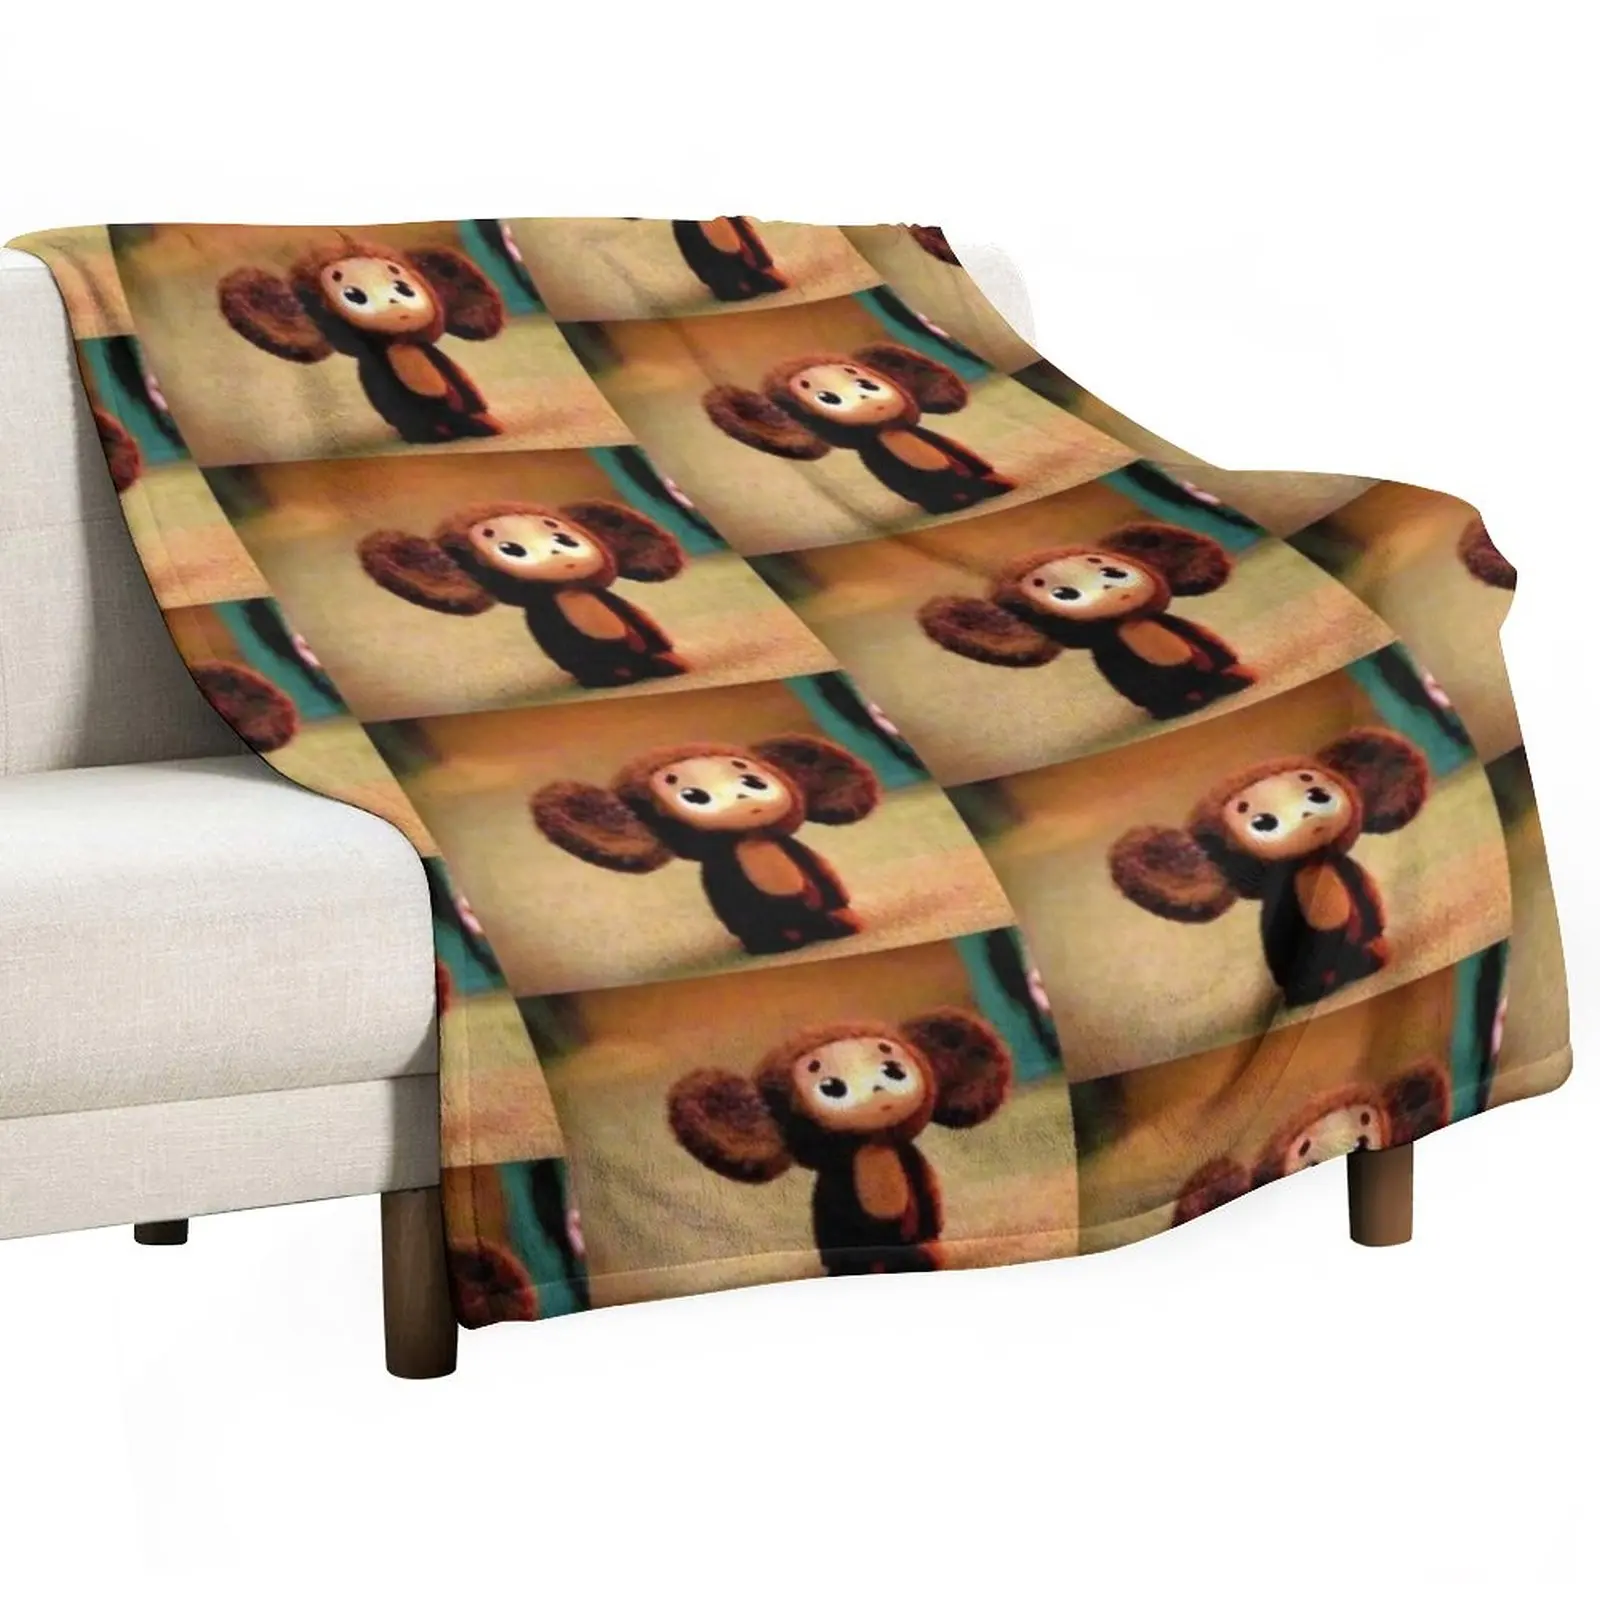 

Декоративное одеяло Cheburashka, милый плед в клетку, пляжное одеяло